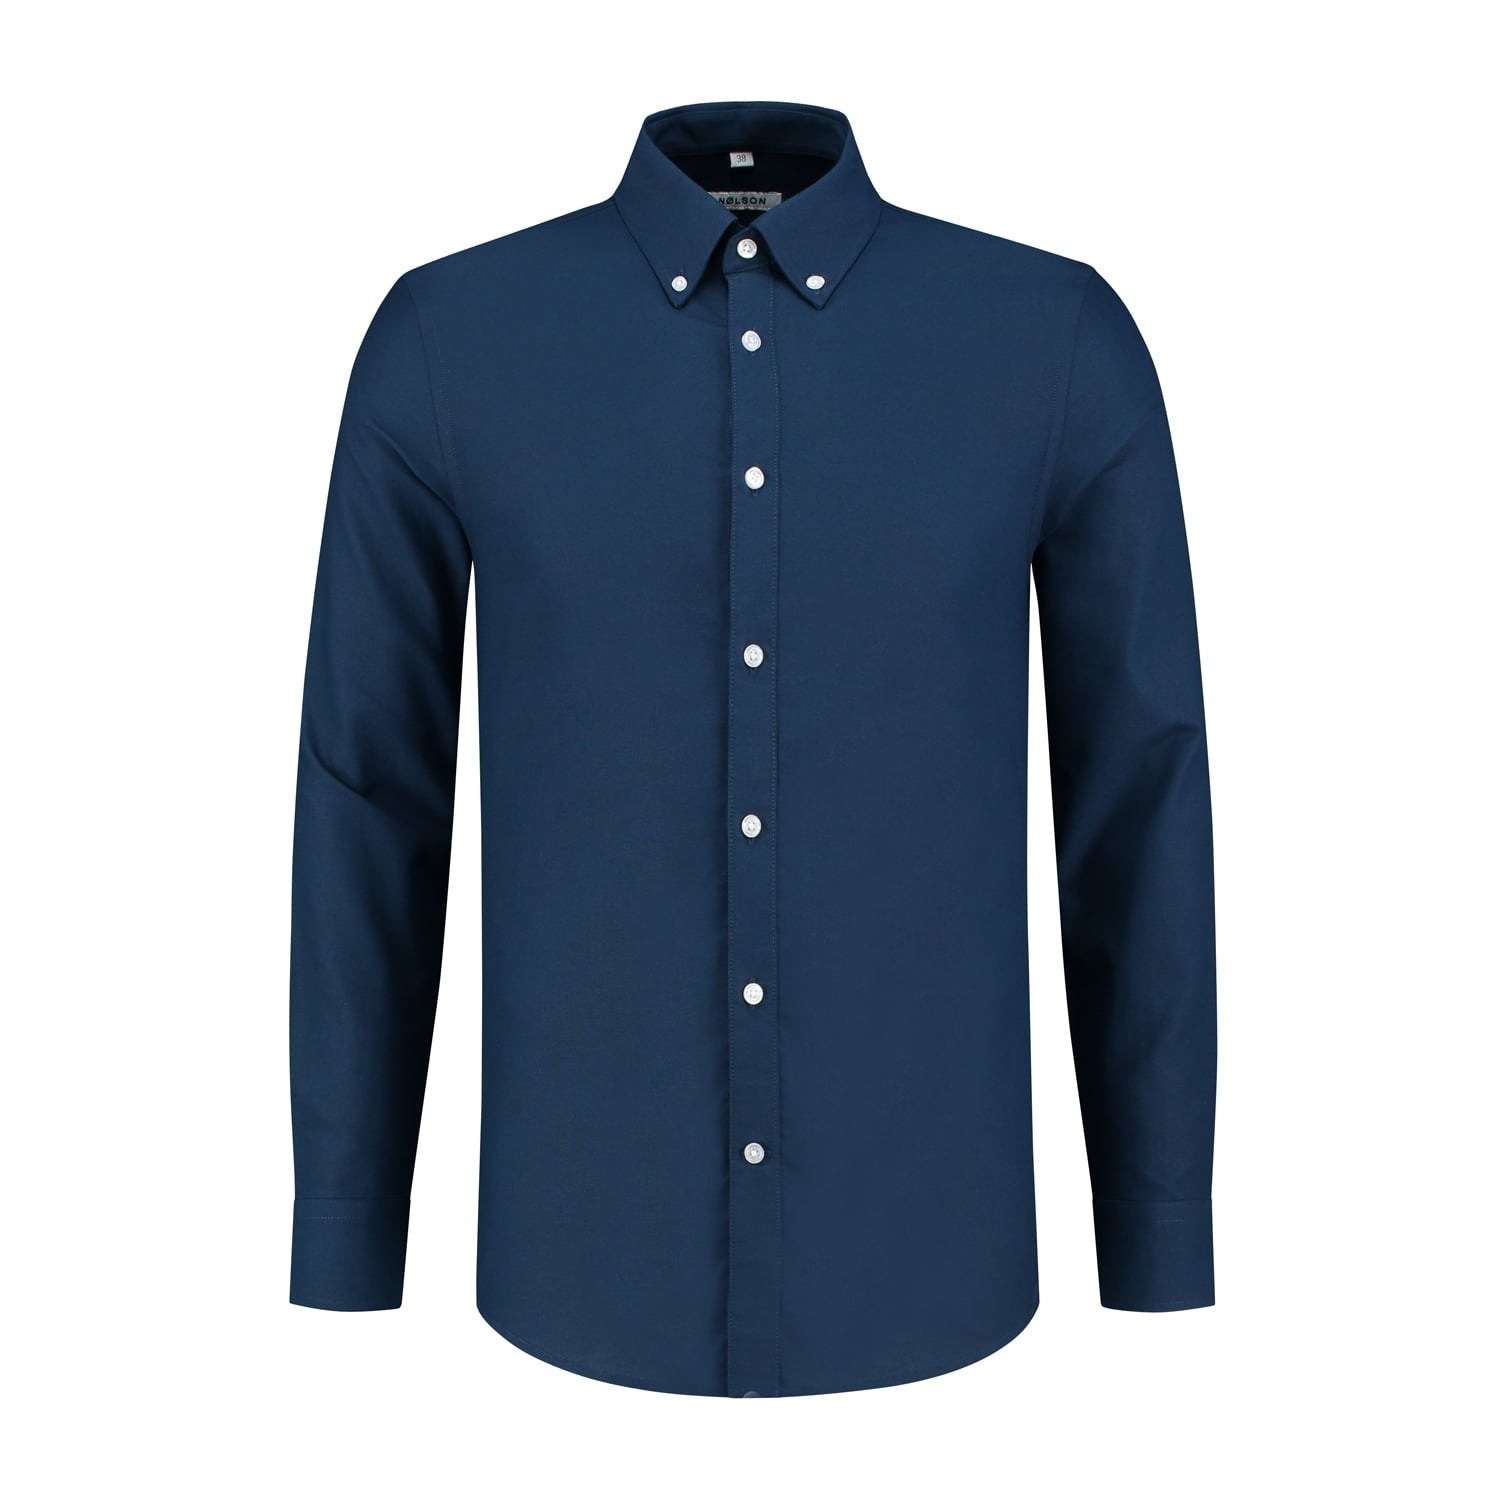 Blue navy button down shirt